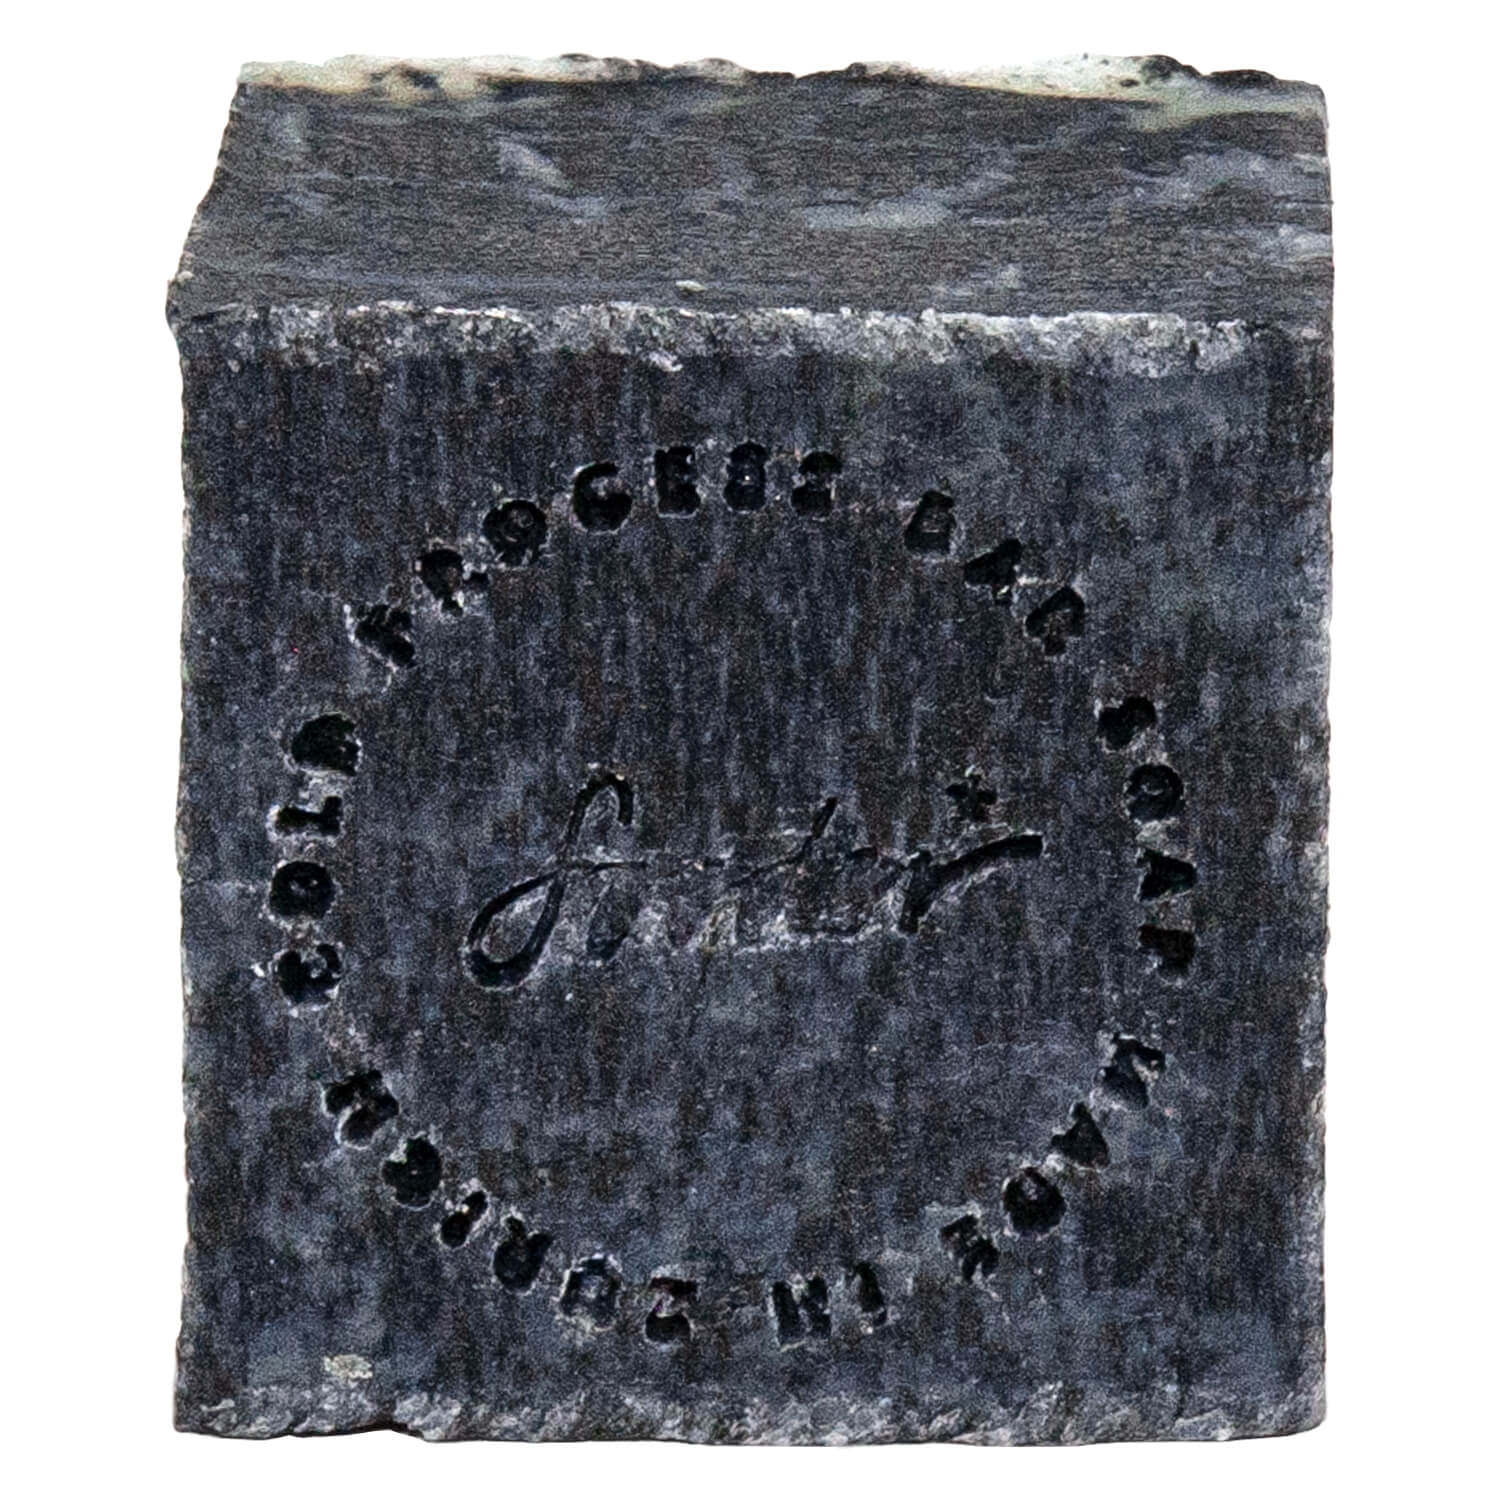 Produktbild von Soeder - Natural Bar Soap Coal Black Pine